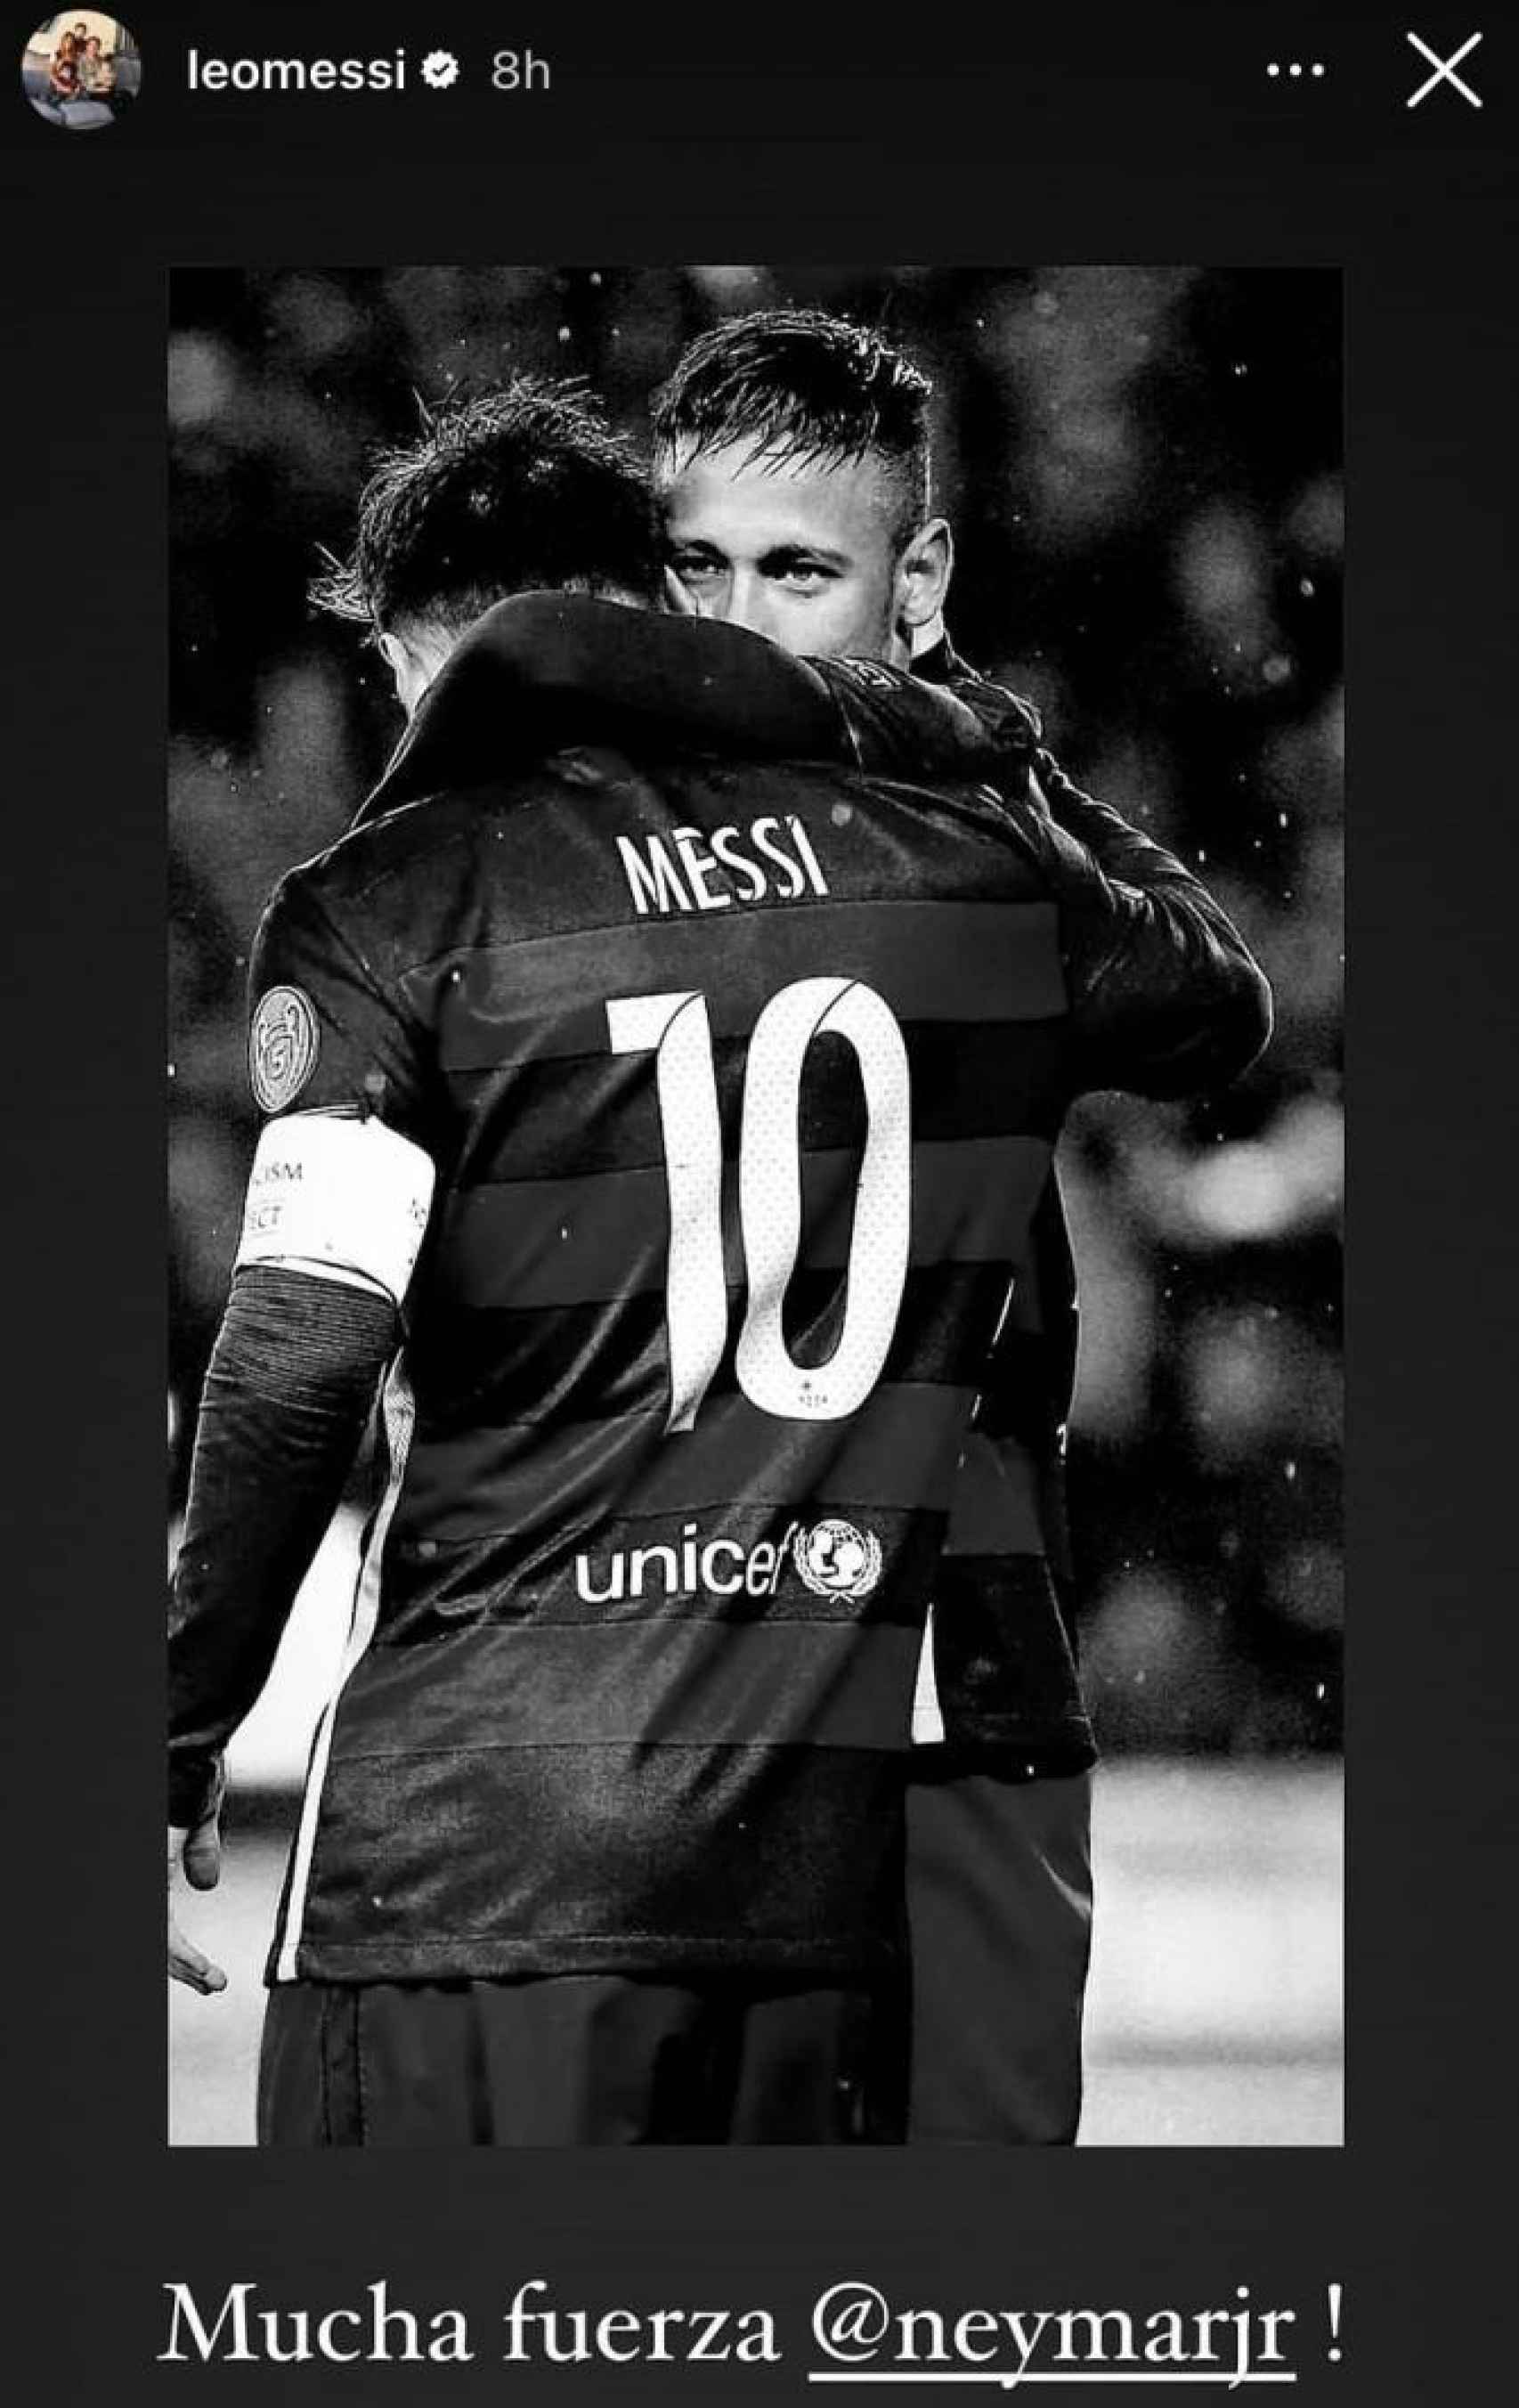 El mensaje de apoyo de Messi a Neymar en su "peor momento" tras conocerse  su grave lesión